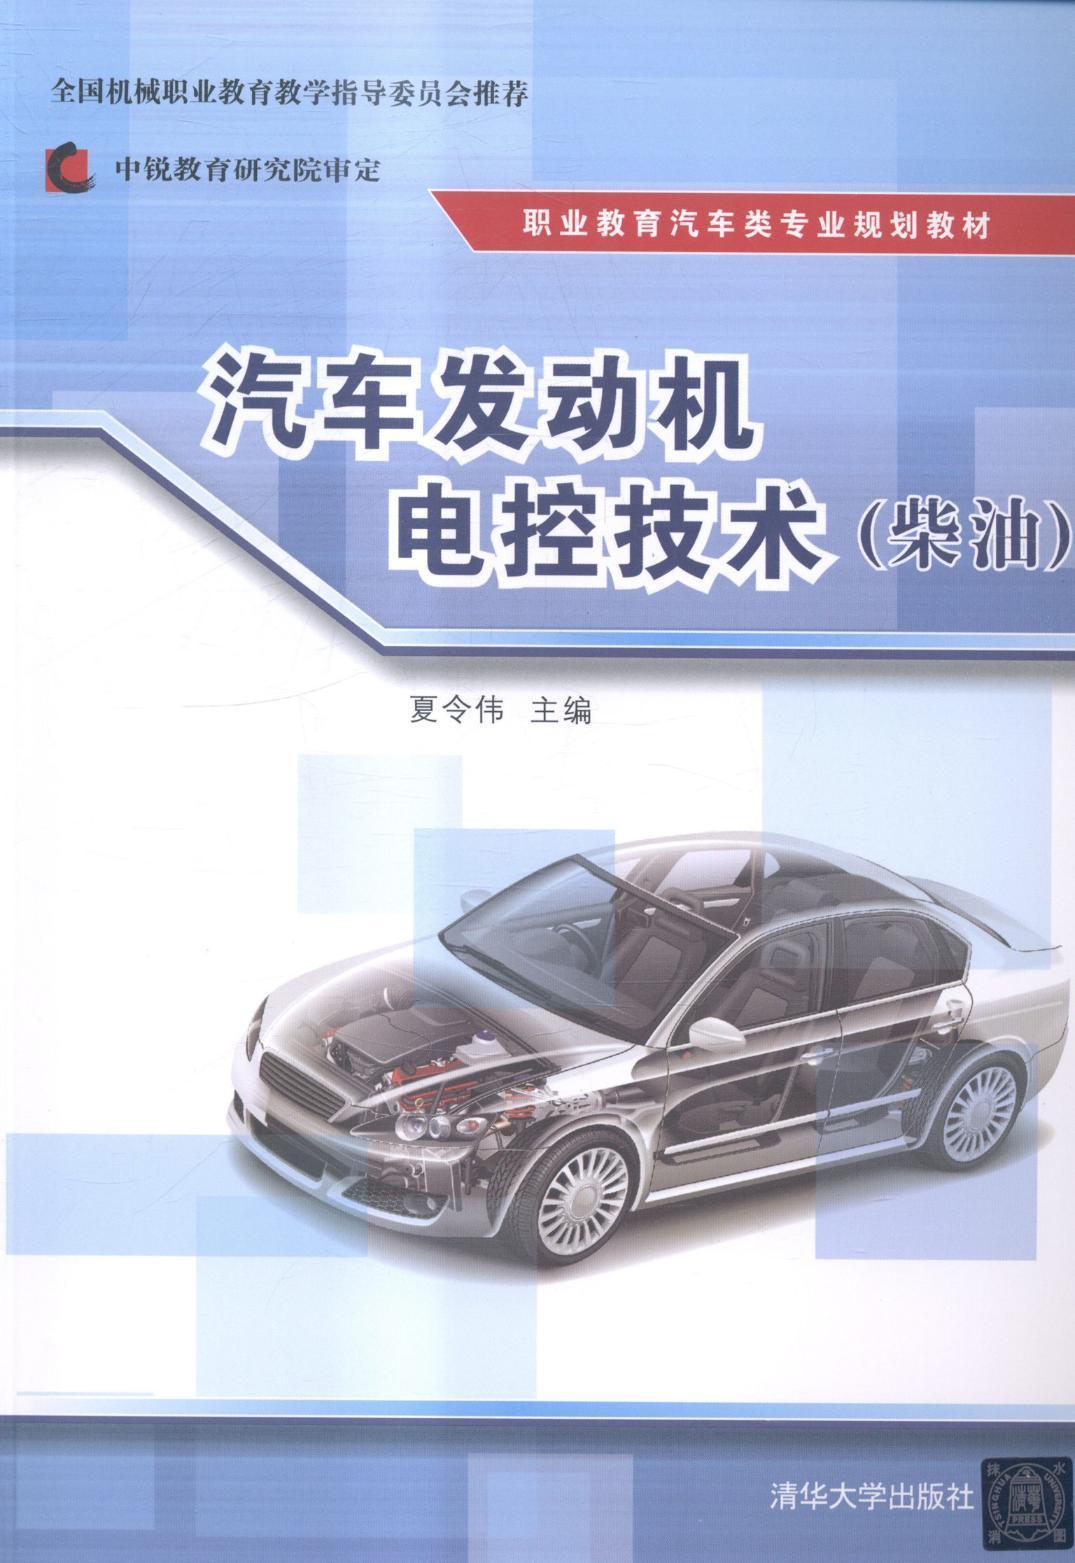 汽车发动机电控技术:柴油 书 夏令伟汽车发动机电子系统控制系统职业 教材书籍